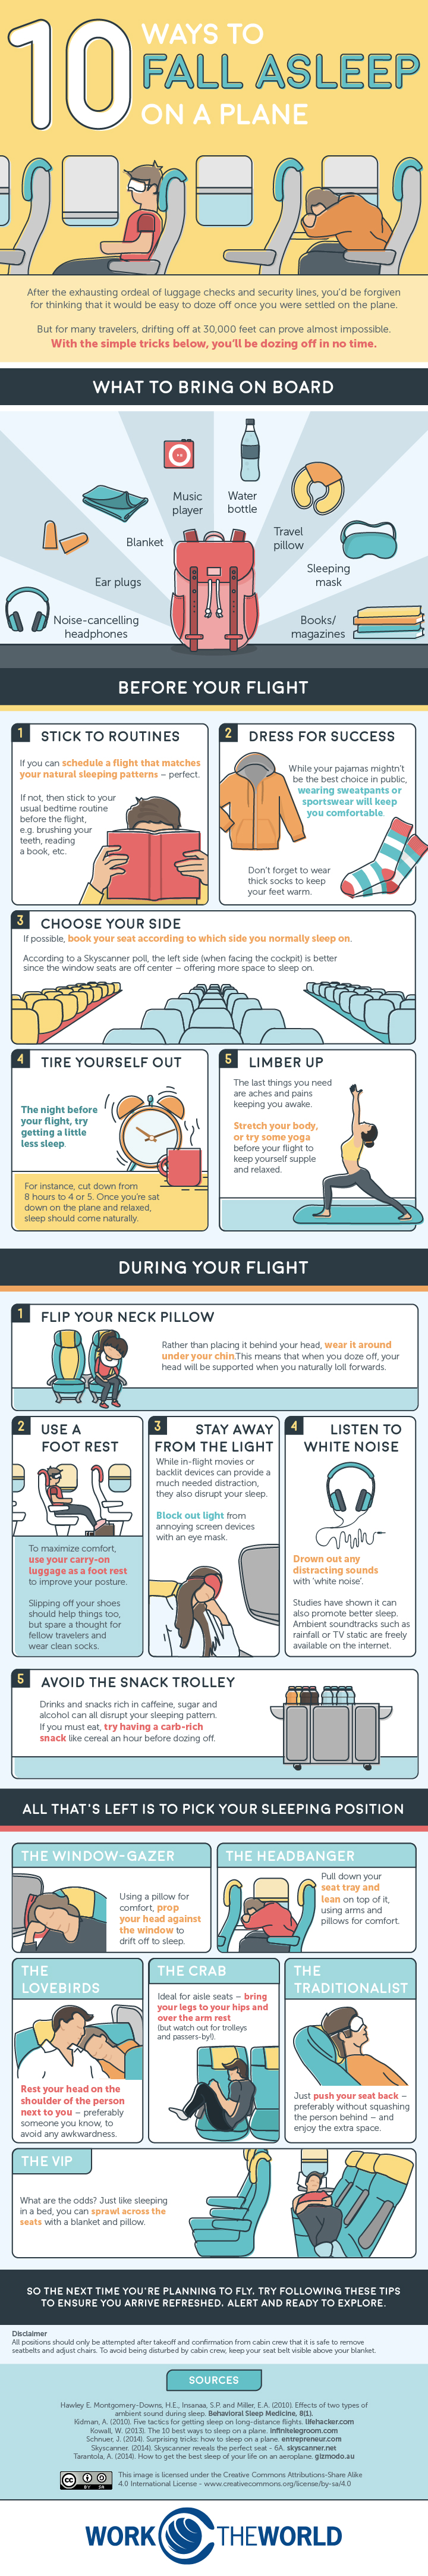 10-ways-to-fall-asleep-on-a-plane-v3